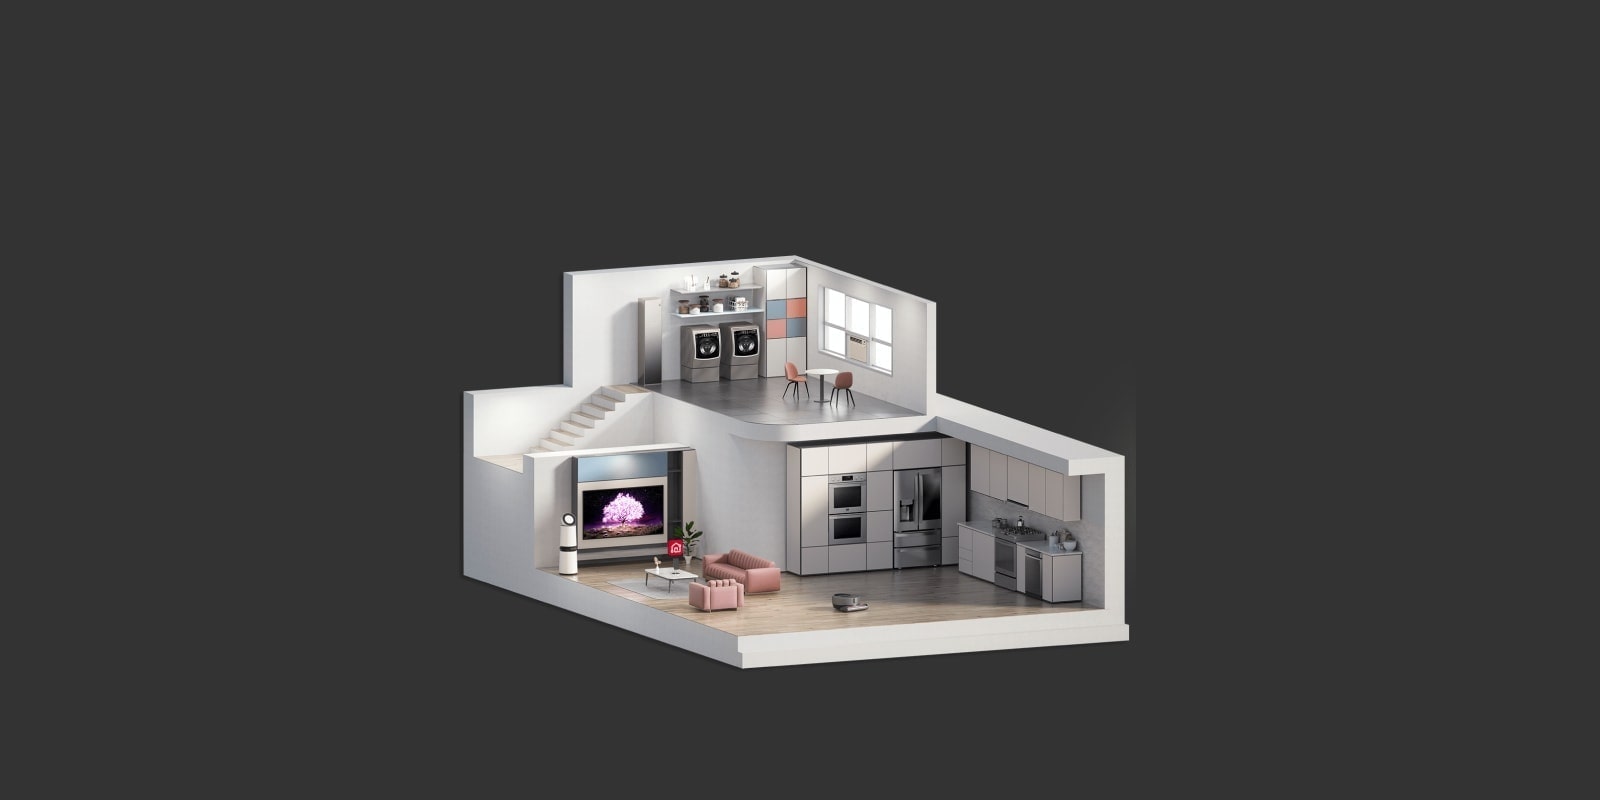 صورة تعرض مقطعًا عرضيًا لنموذج أحد المنازل والغرف المختلفة التي يحتوي عليها.